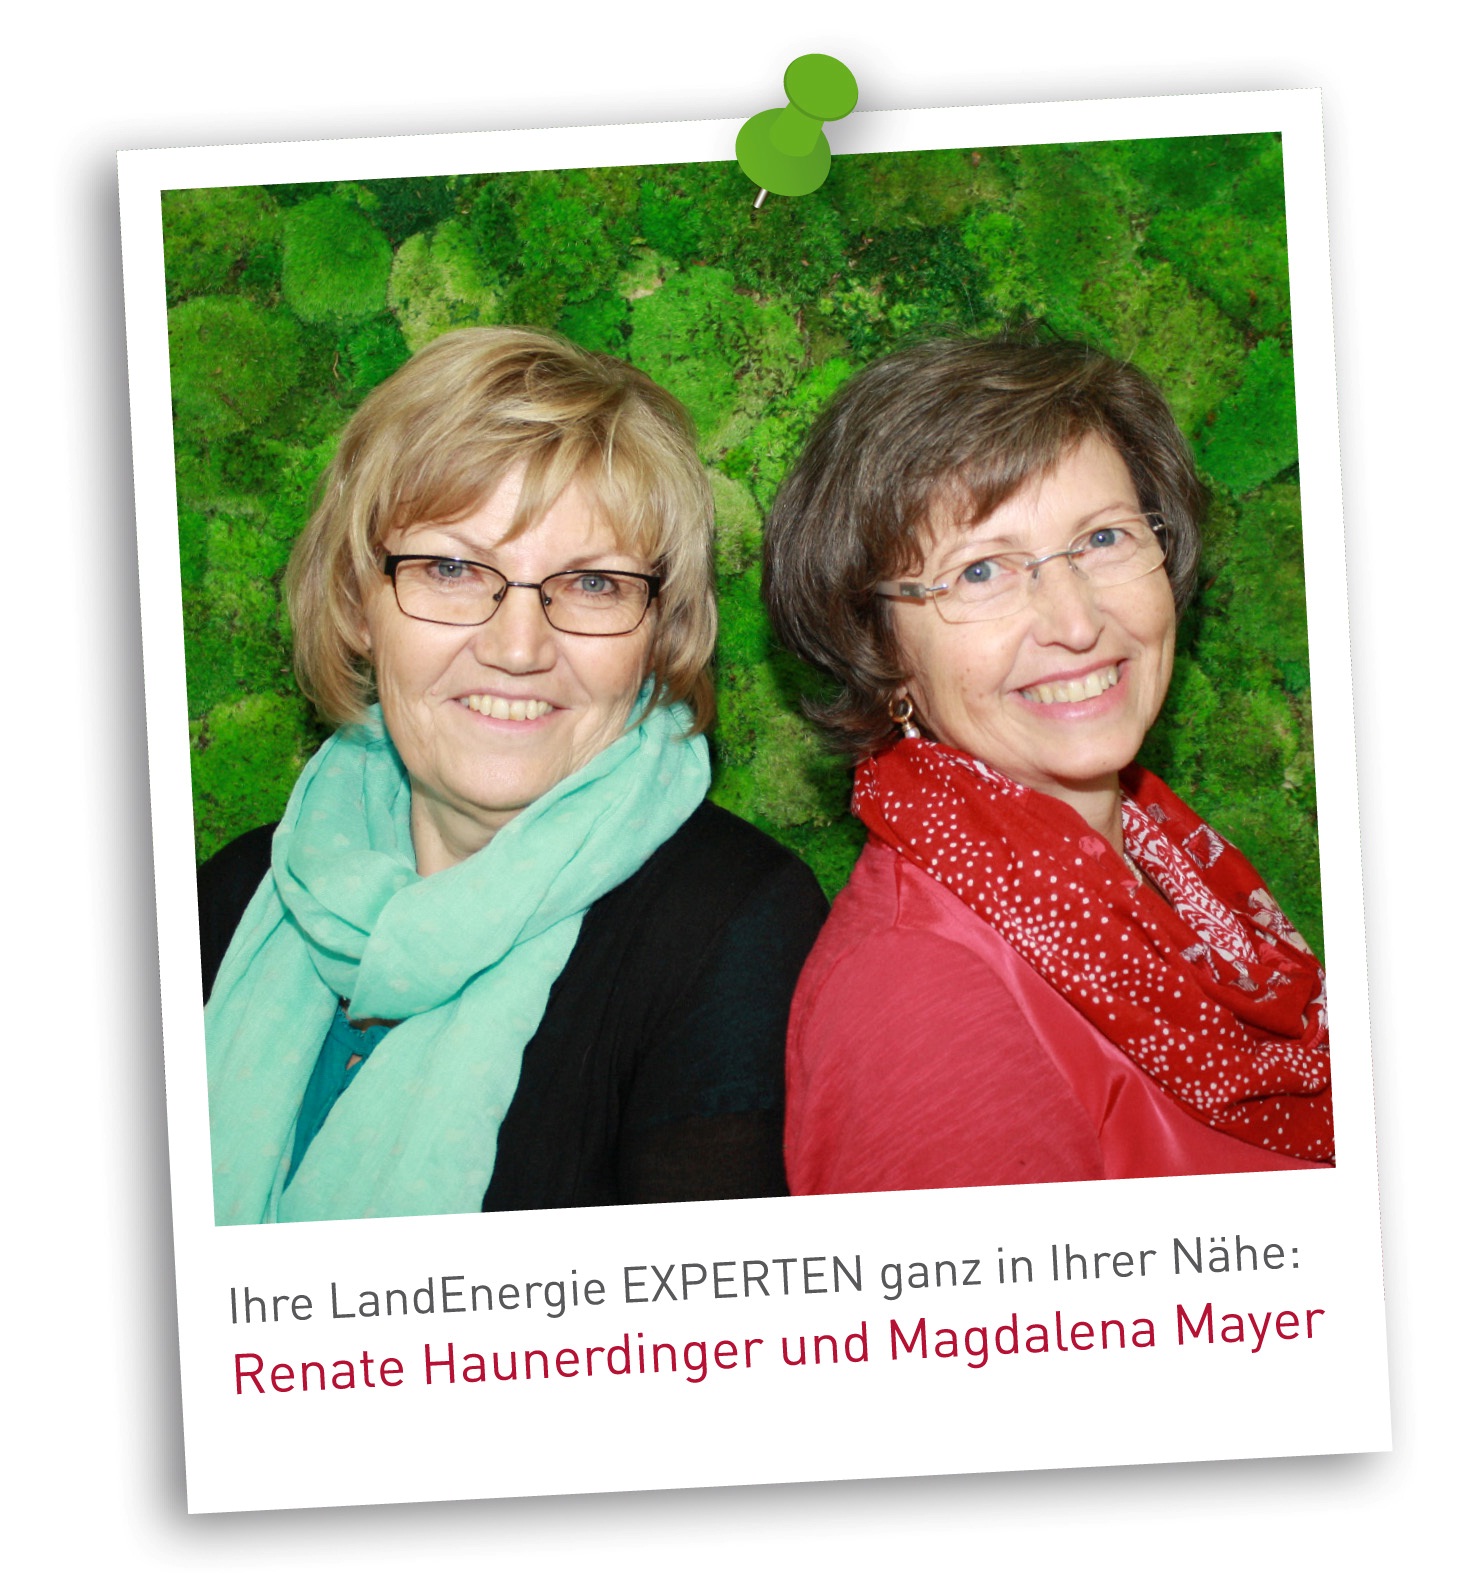 Renate Haunerdinger und Magdalena Mayer